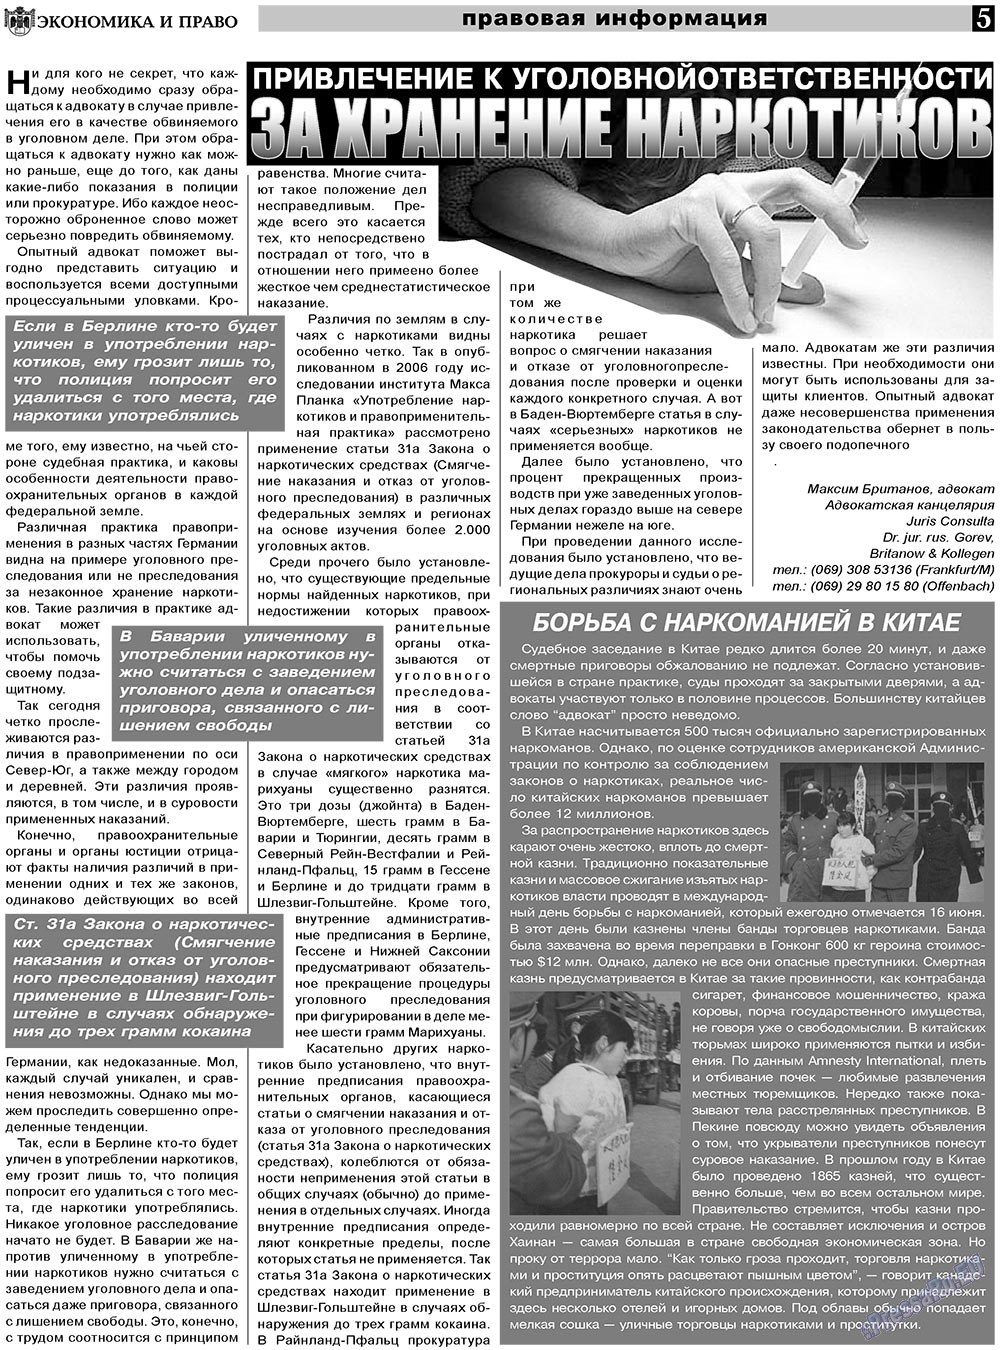 Экономика и право, газета. 2011 №3 стр.5